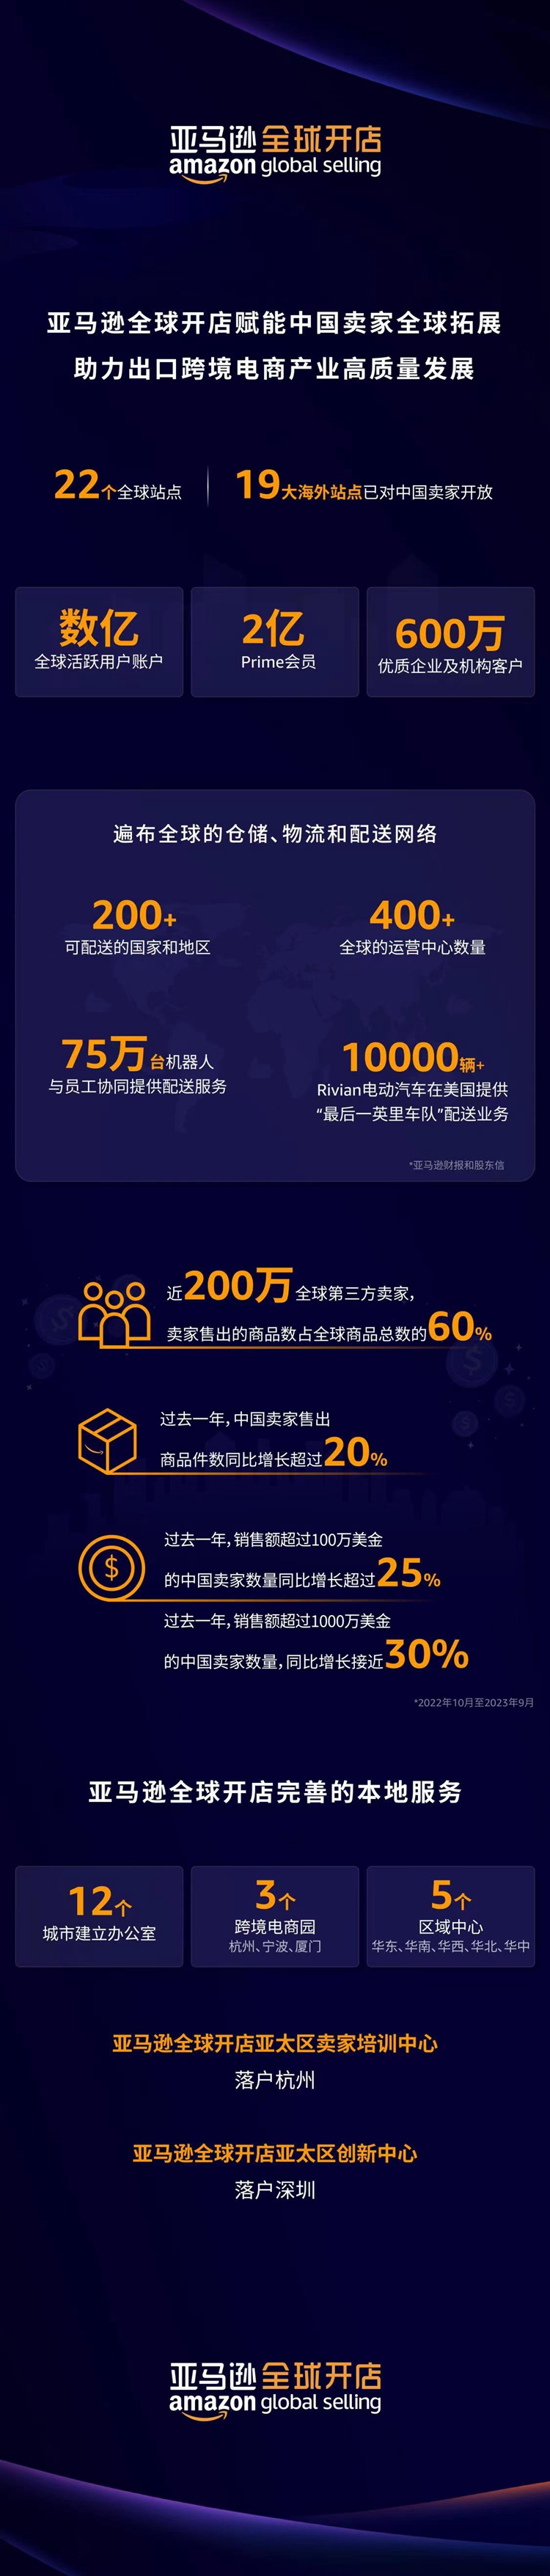 成立亚太区创新中心 亚马逊全球开店发布中国五大业务战略重点 百业信息 第5张